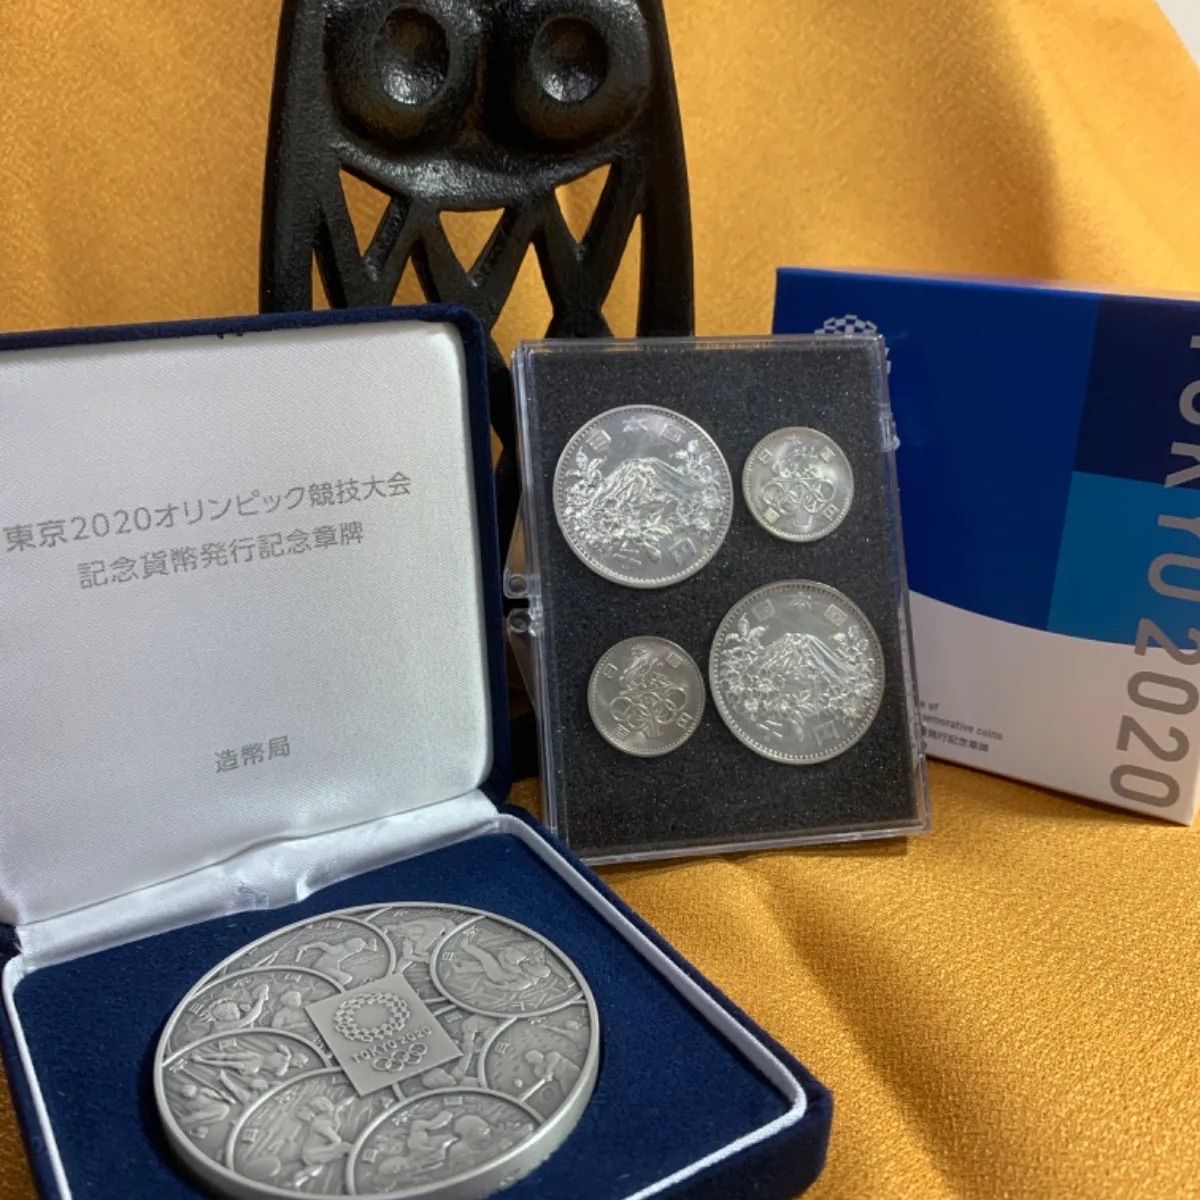 希少限定3000枚 東京2020オリンピック記念貨幣発行記念章牌 